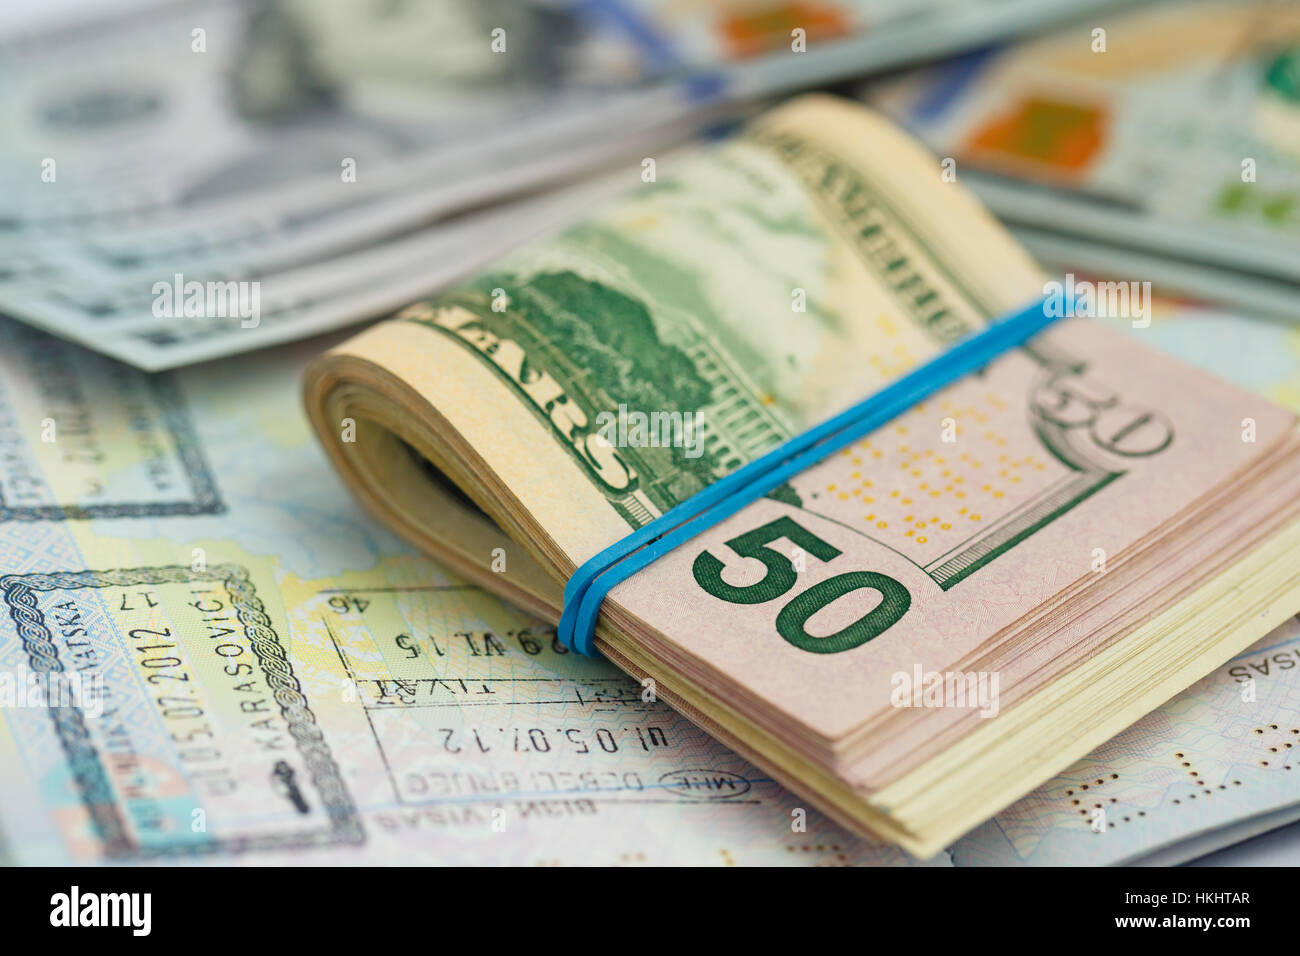 Amerikanisches Geld ist auf der Oberseite des geöffneten Reisepass - Reisen Konzept Stockfoto